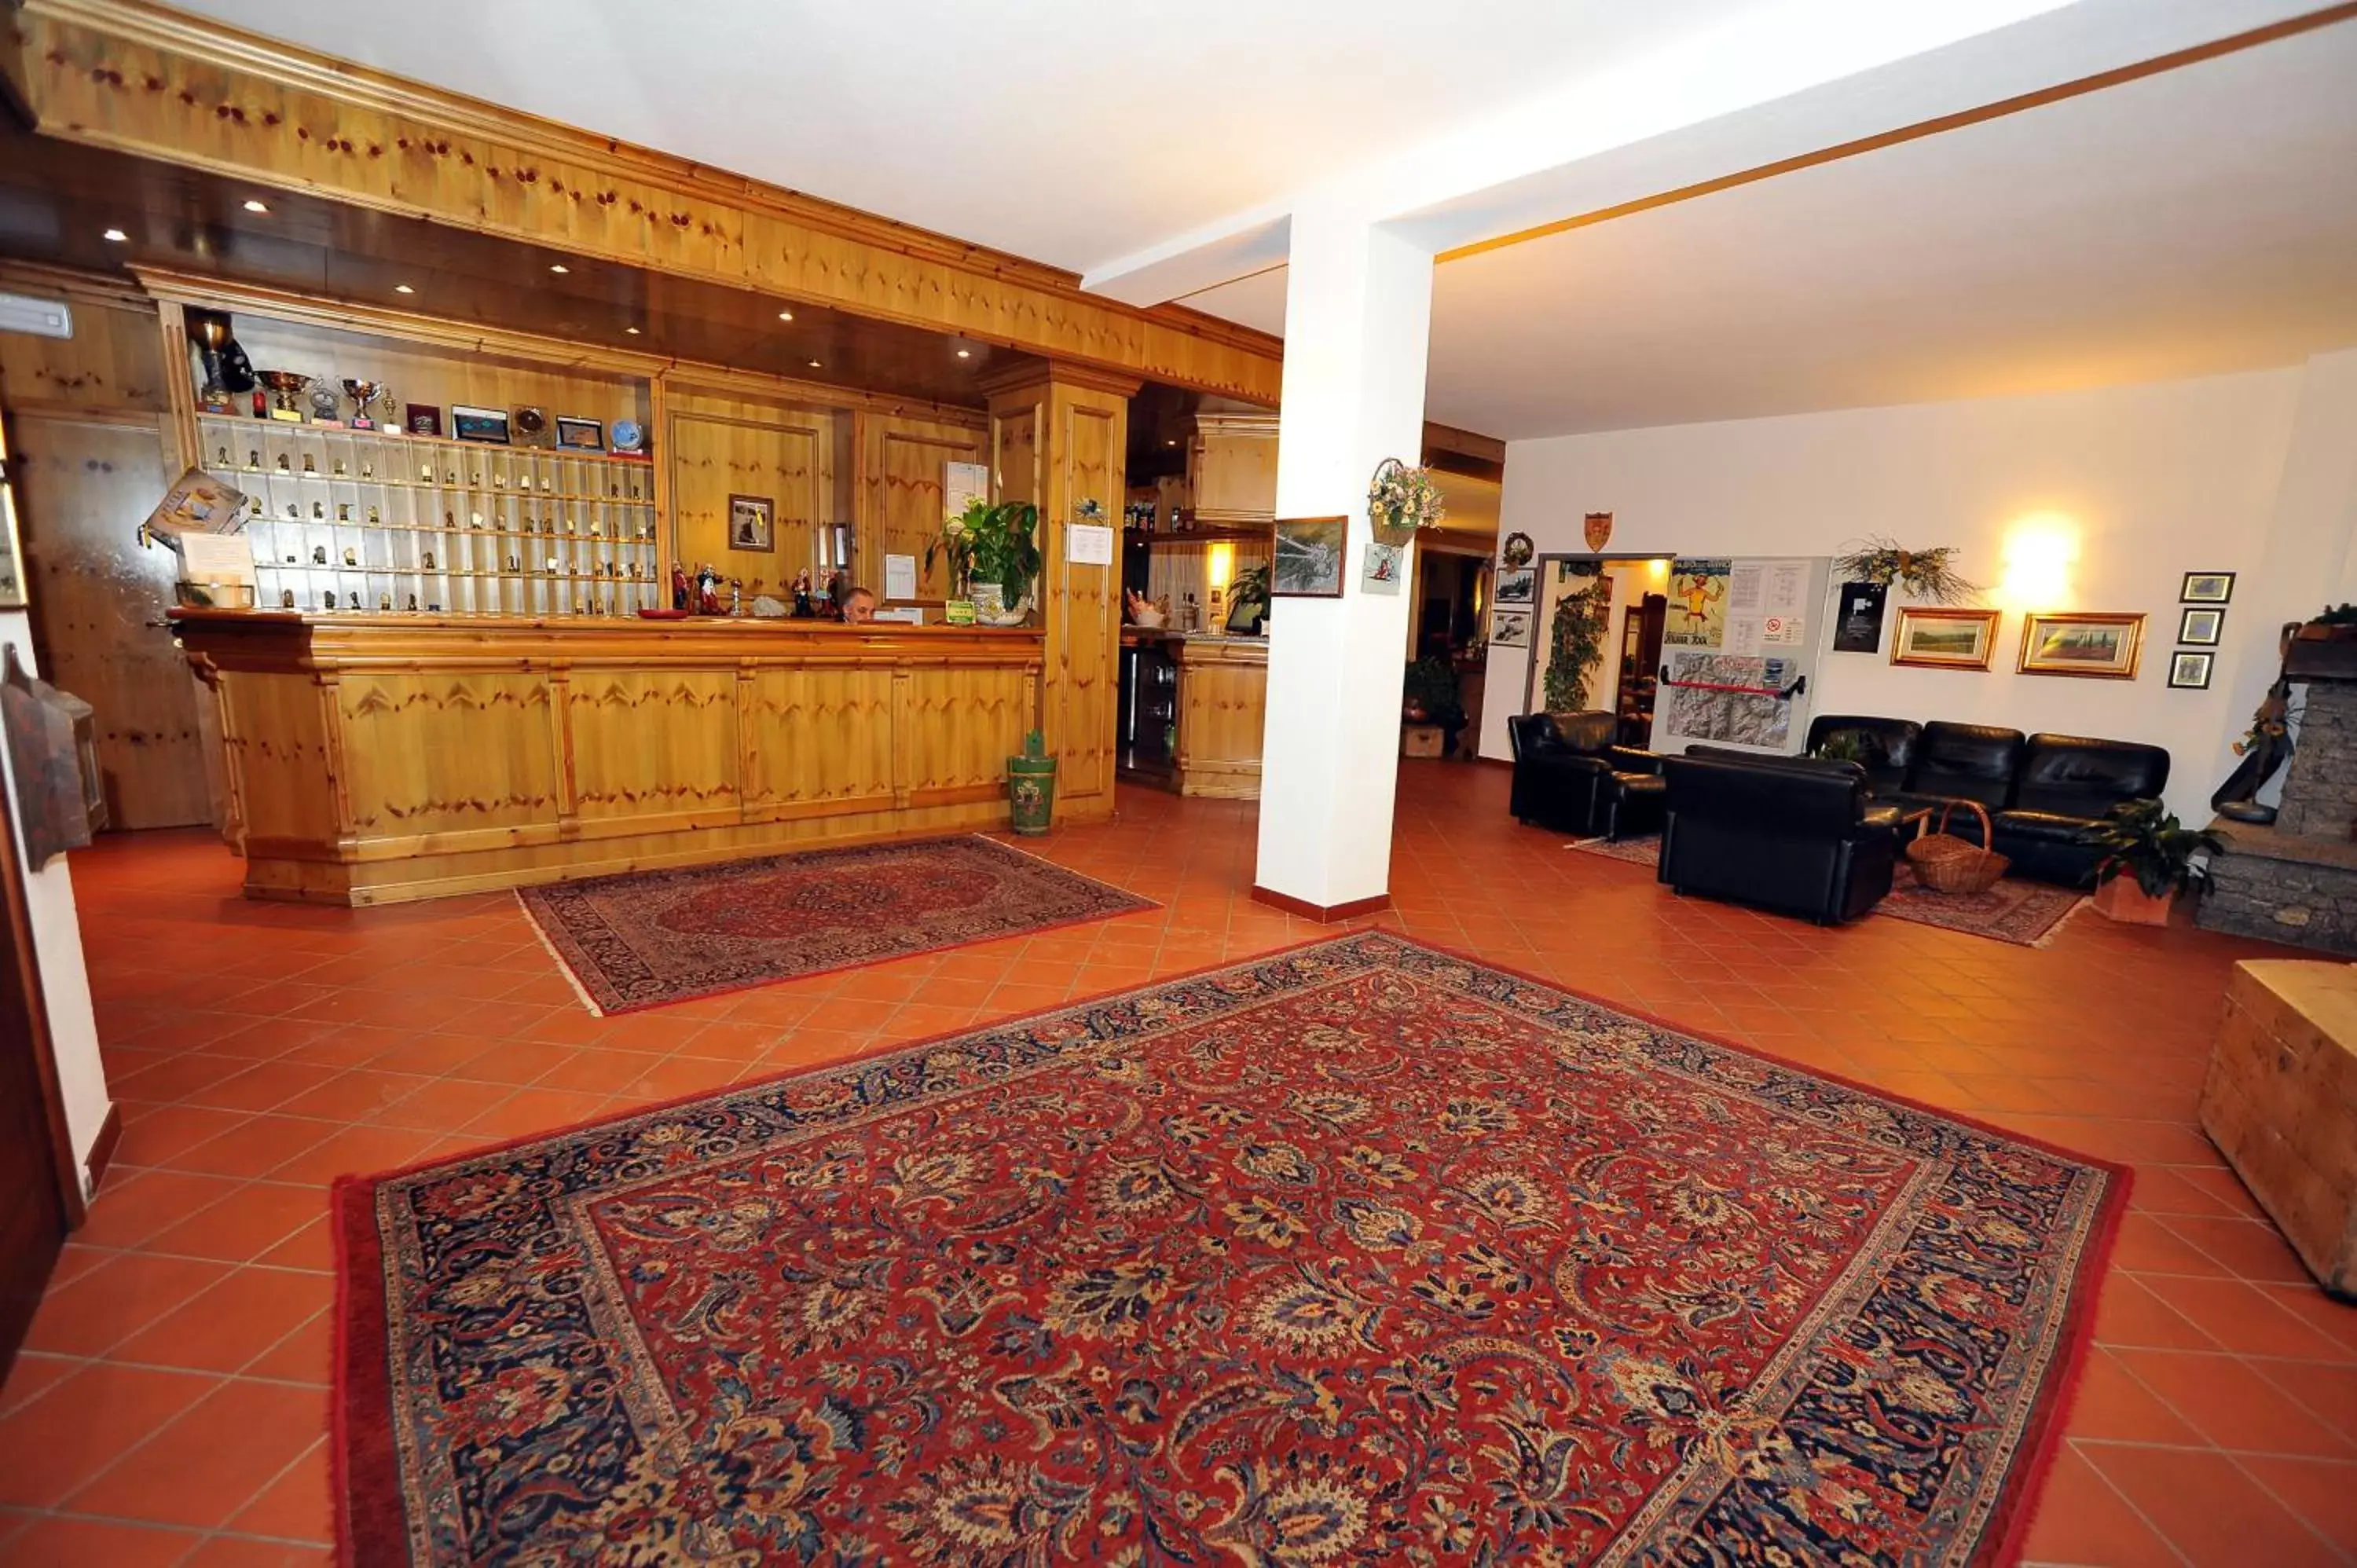 Lobby or reception in Hotel Derby